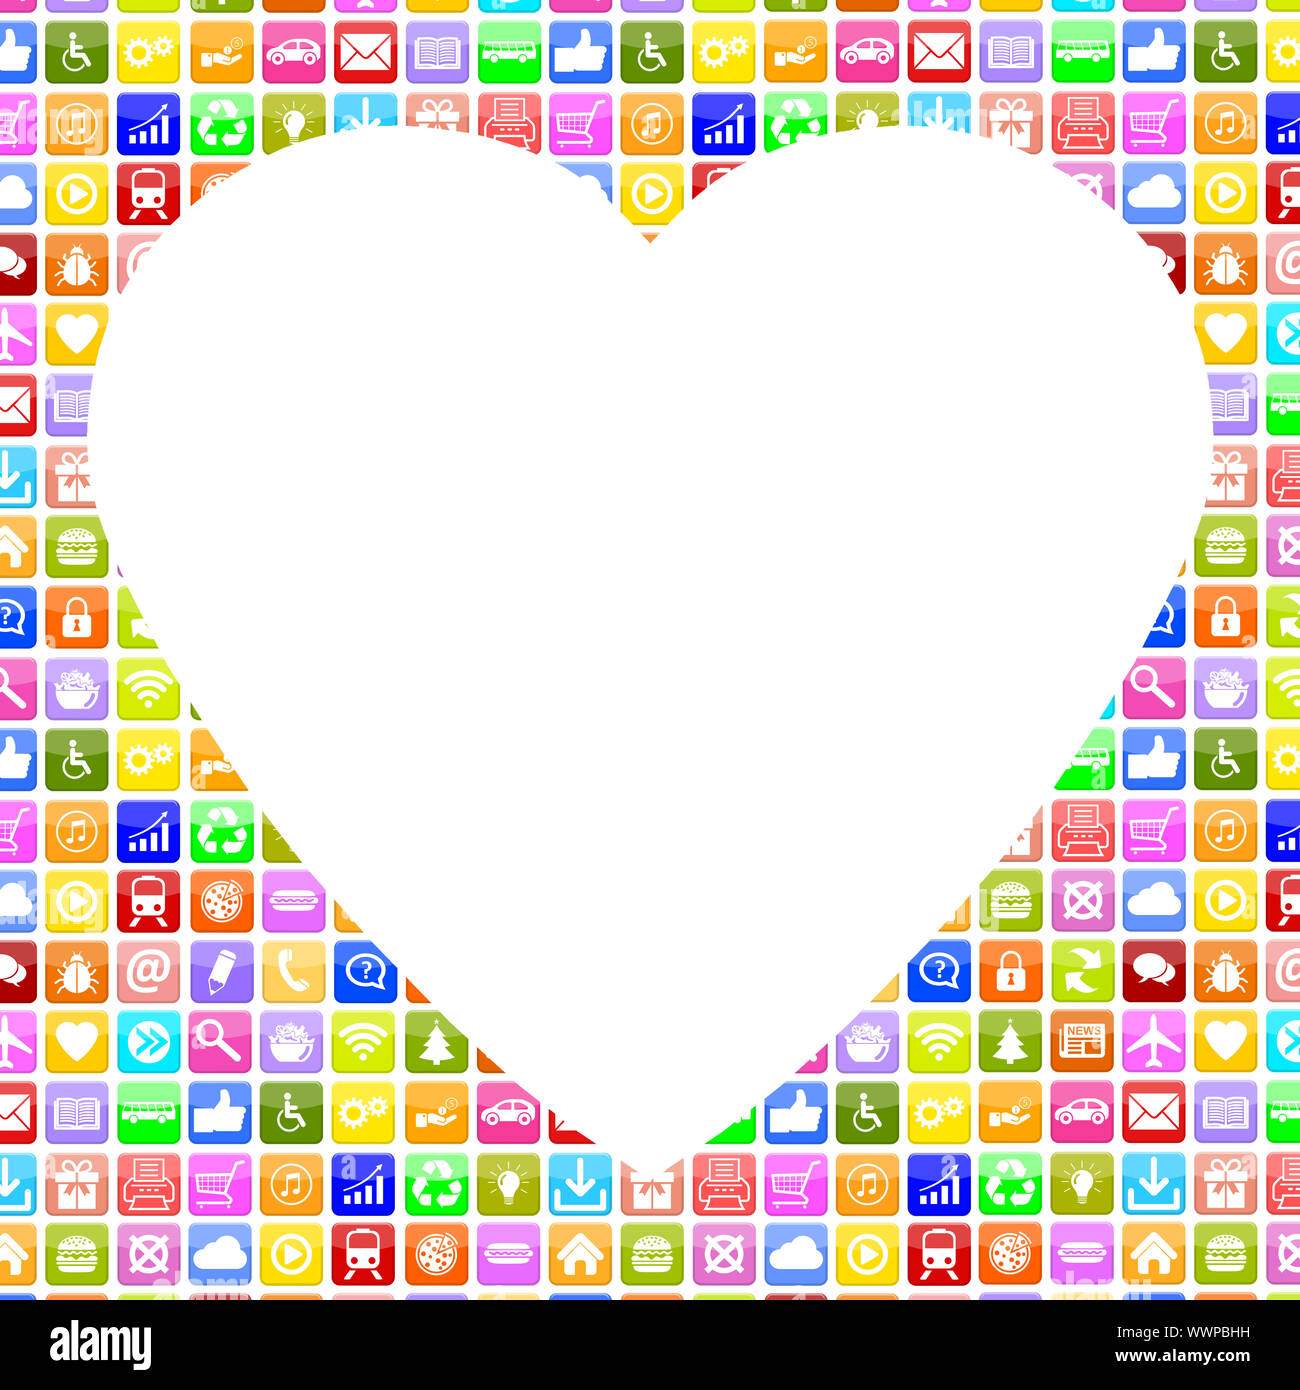 Applications L'application et de l'amour partenaire App app sur l'internet datant en ligne Banque D'Images